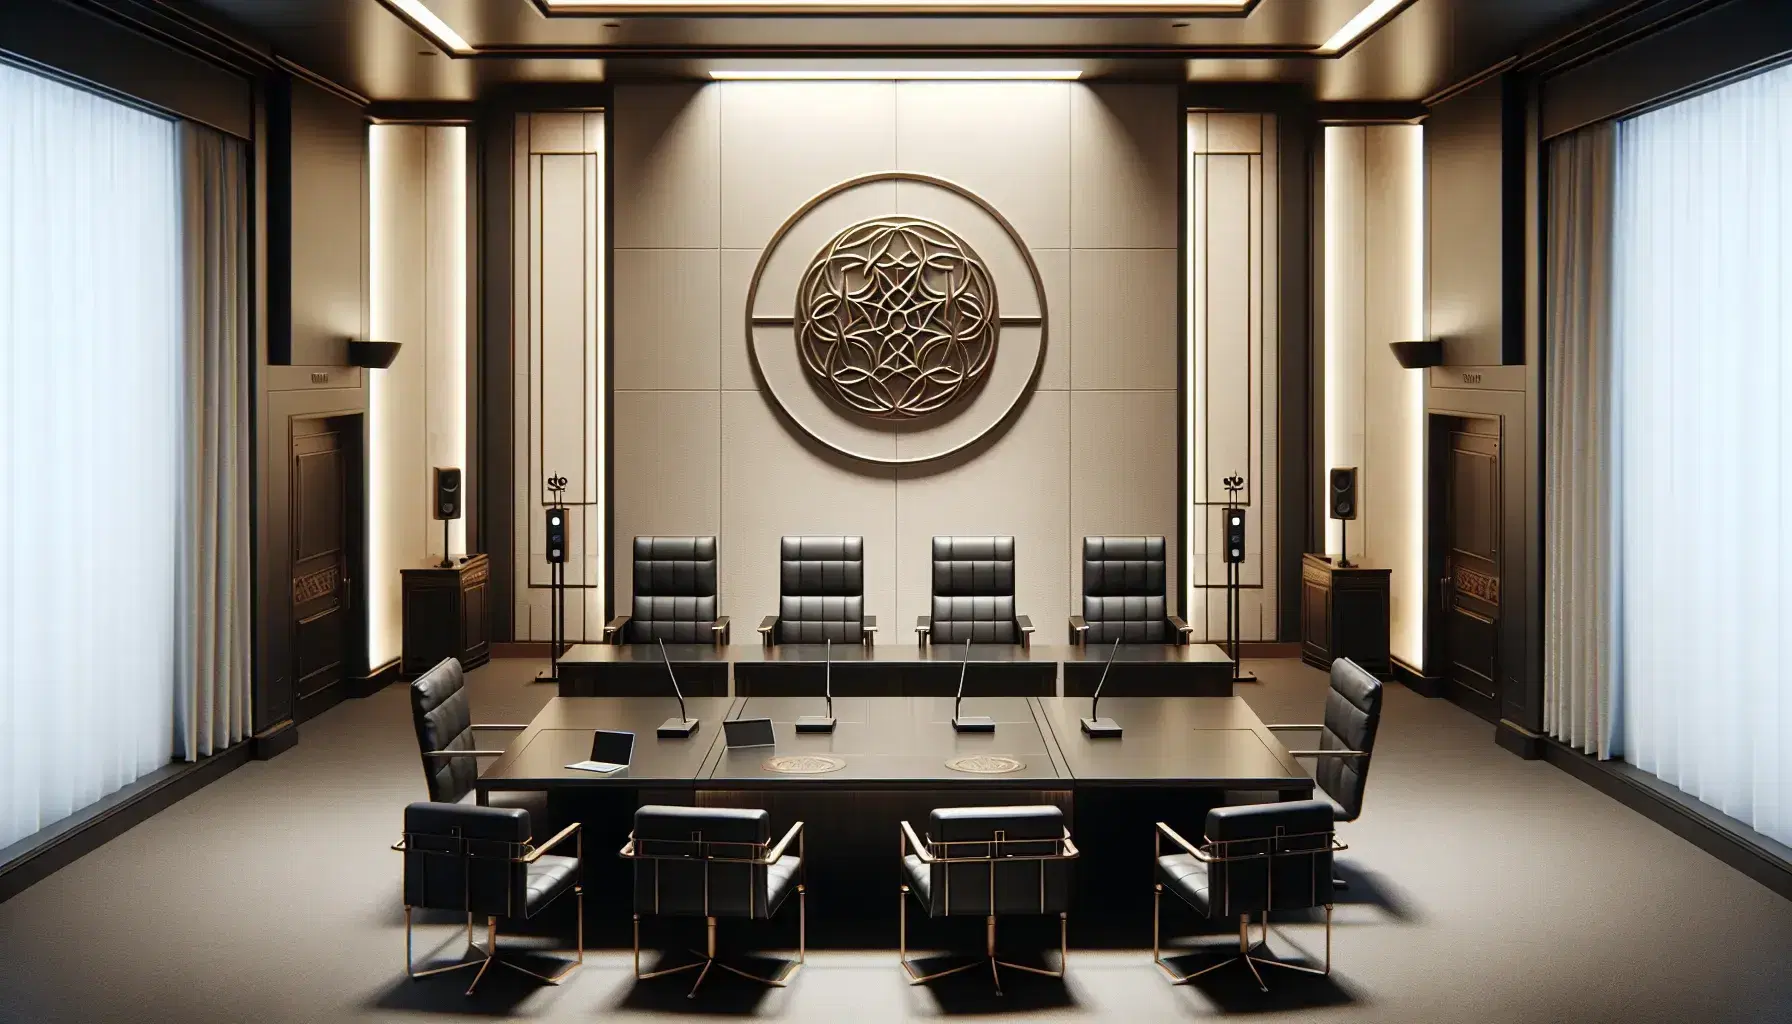 Sala de tribunal vacía con mesa de madera oscura, sillas de cuero negro, estrado con silla central y emblema abstracto en la pared.